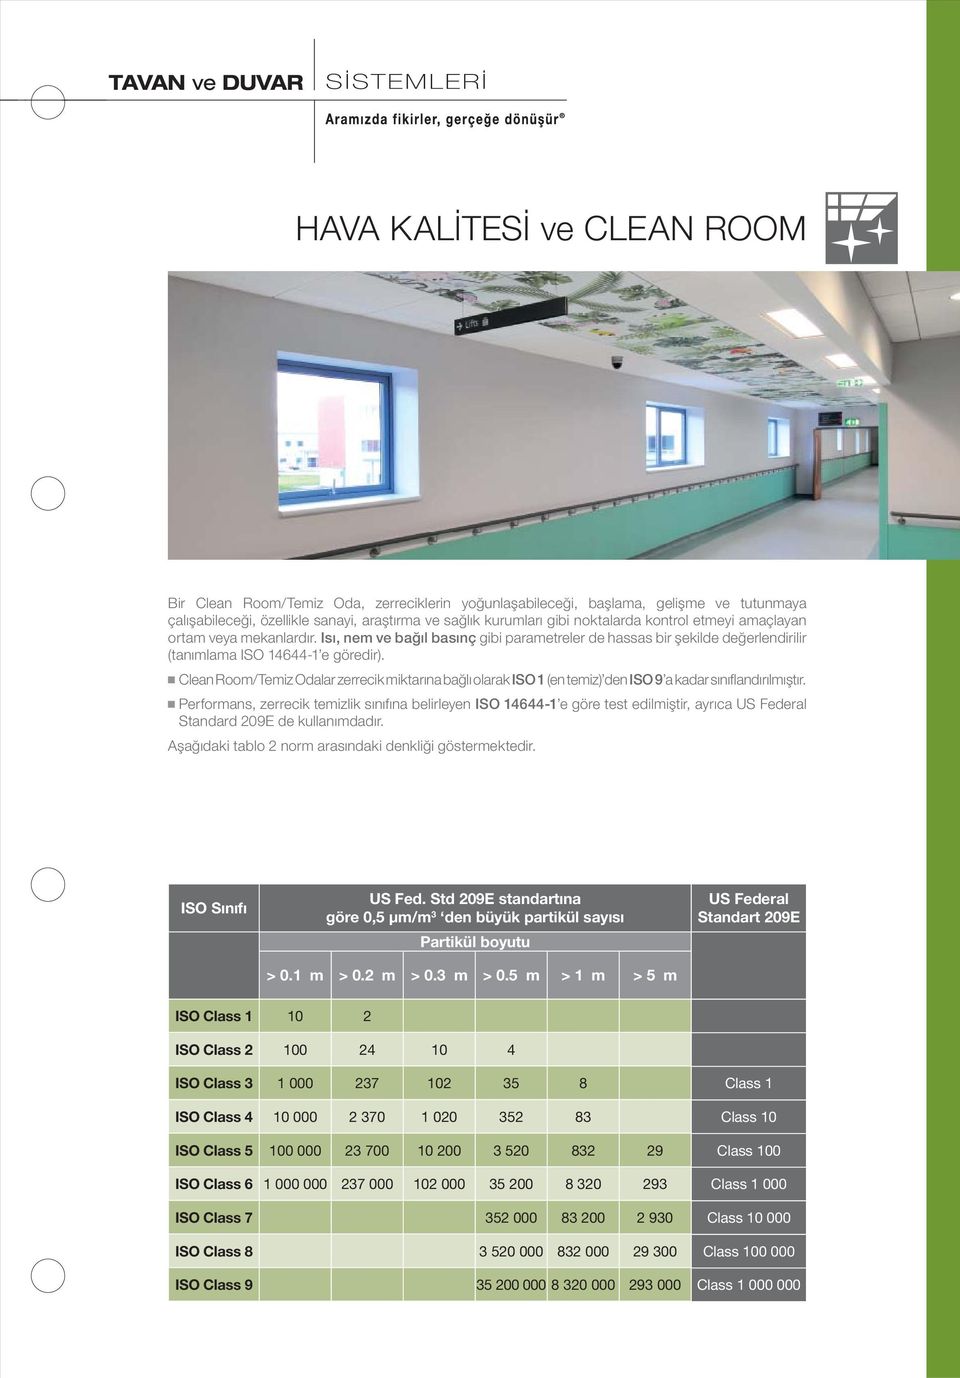 Clean Room/Temiz Odalar zerrecik miktarına bağlı olarak ISO 1 (en temiz) den ISO 9 a kadar sınıfl andırılmıştır.